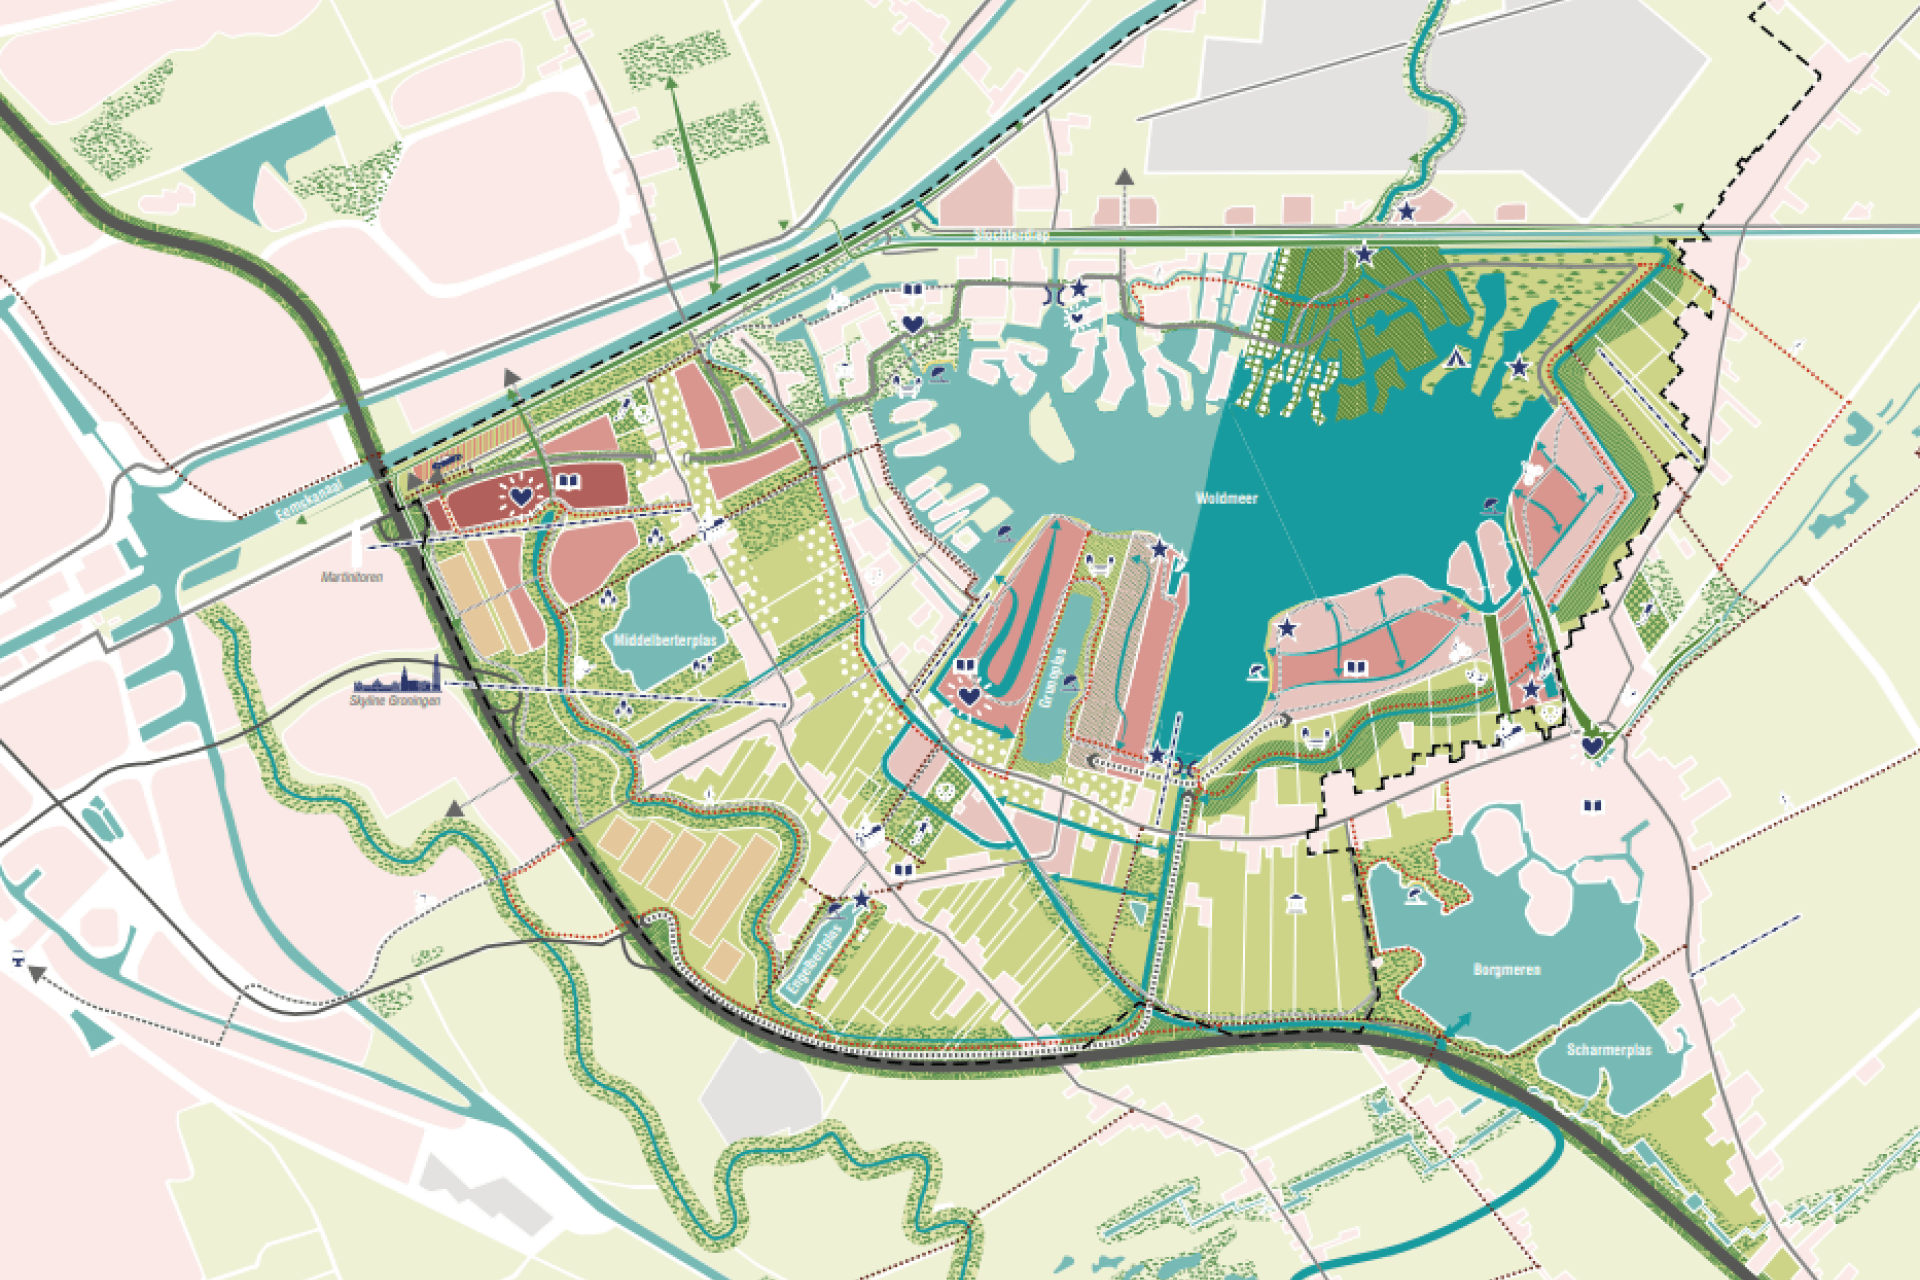 Wensbeeld plangebied Meerstad in 2050.